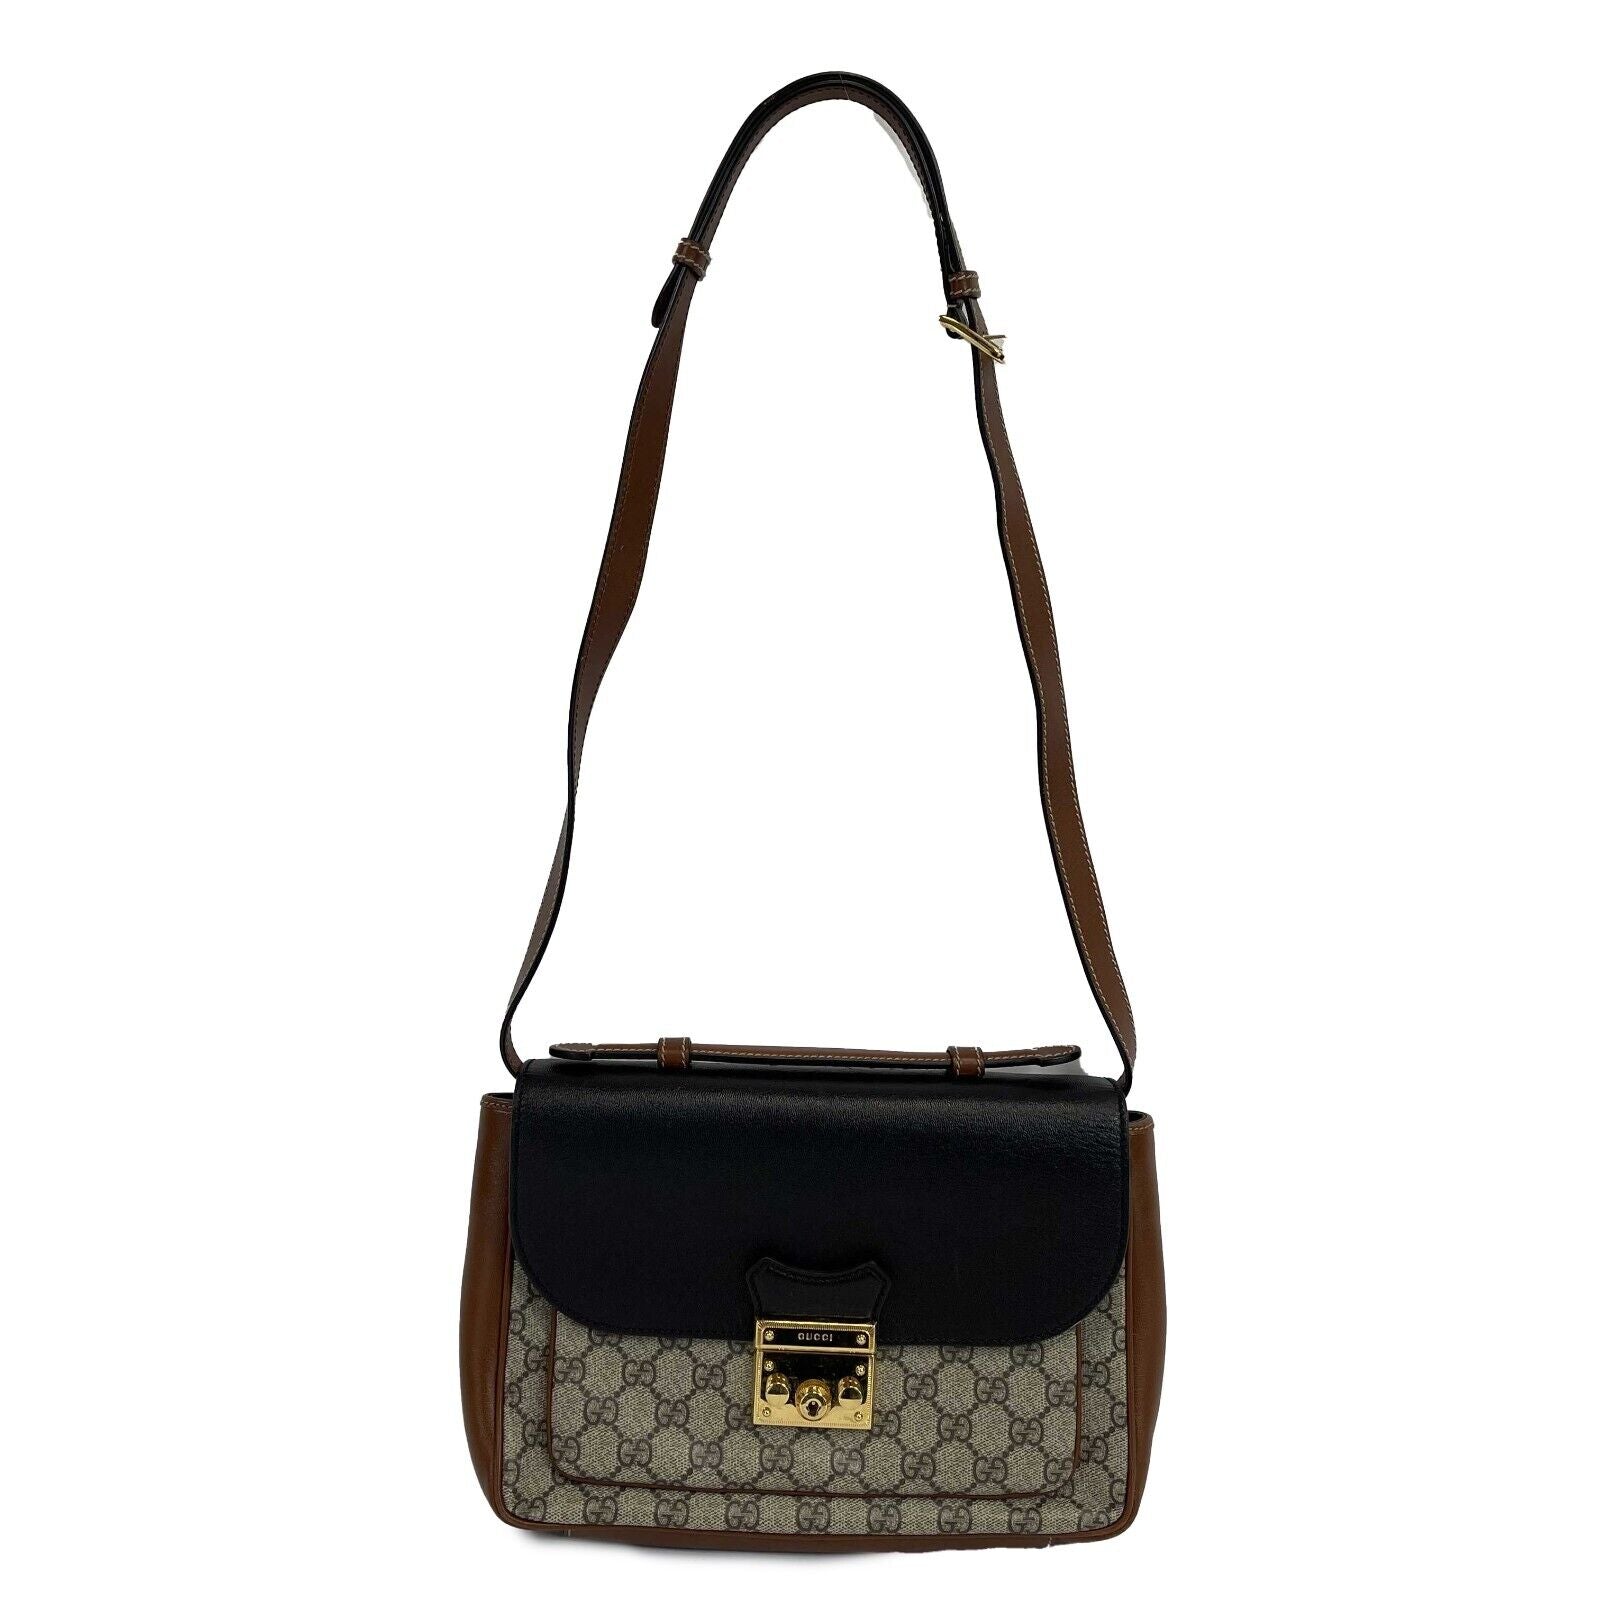 Gucci Padlock GG Supreme Shoulder Bag Brown/Black in Calfskin Leather - US